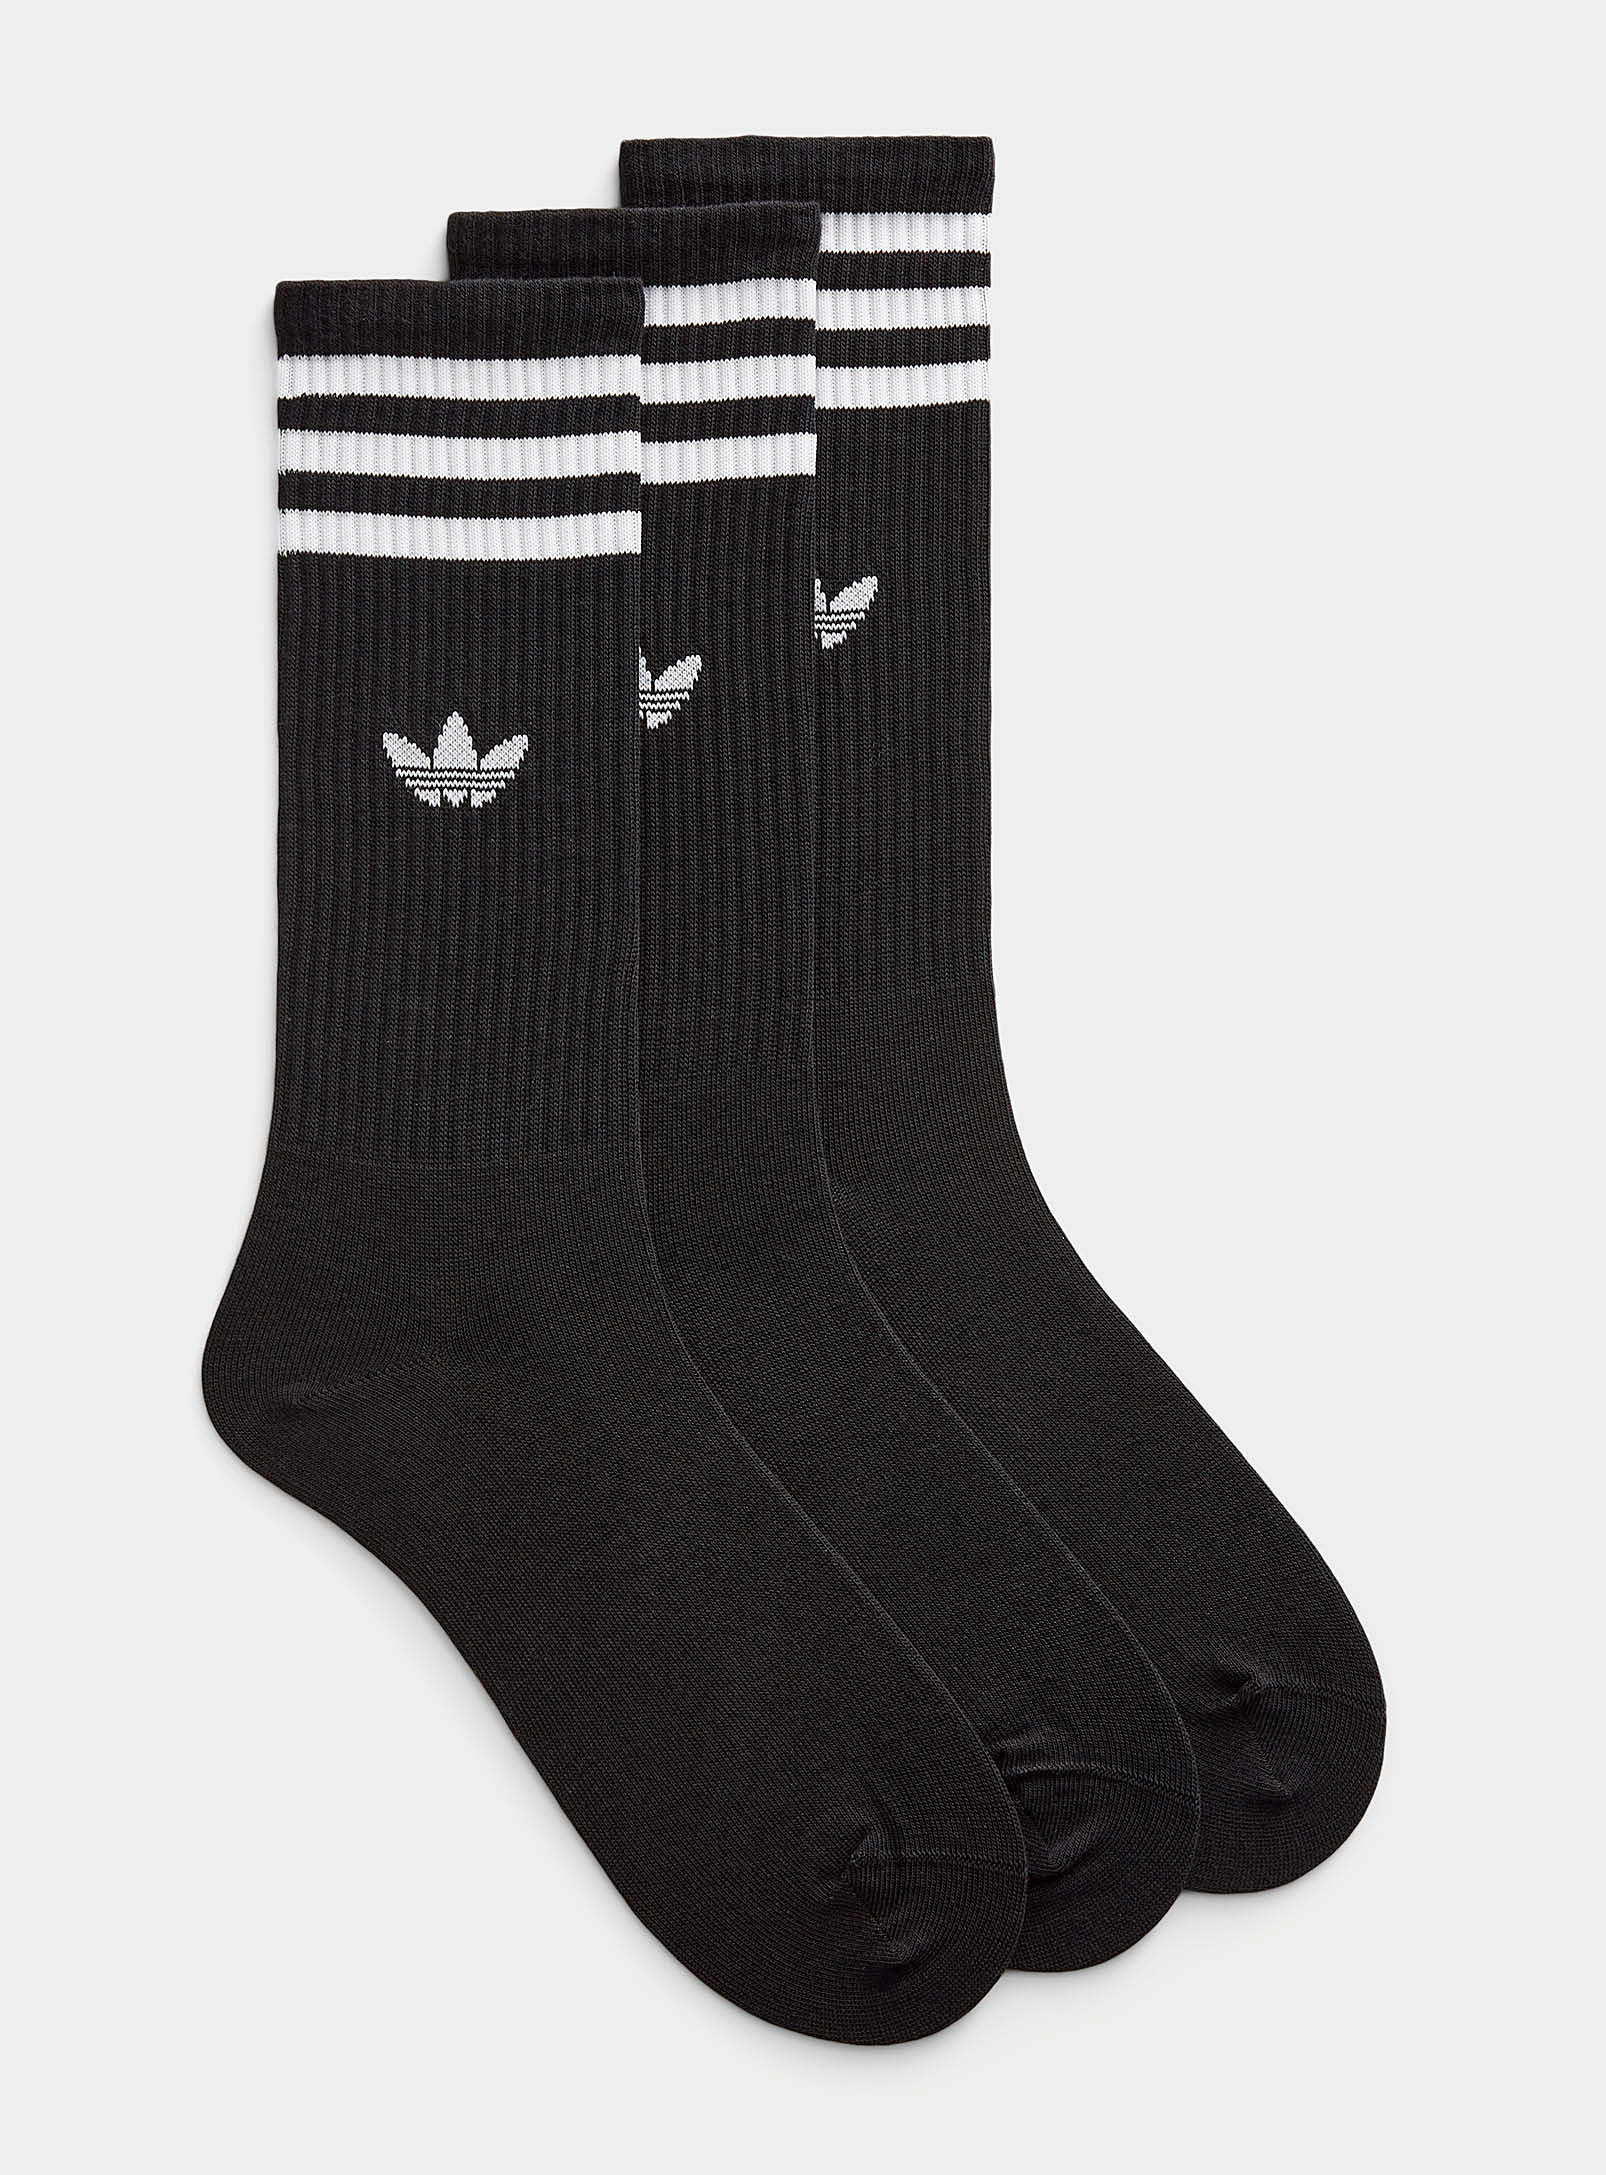 Adidas Originals - Men's Signature-stripe athletic socks 3-pack